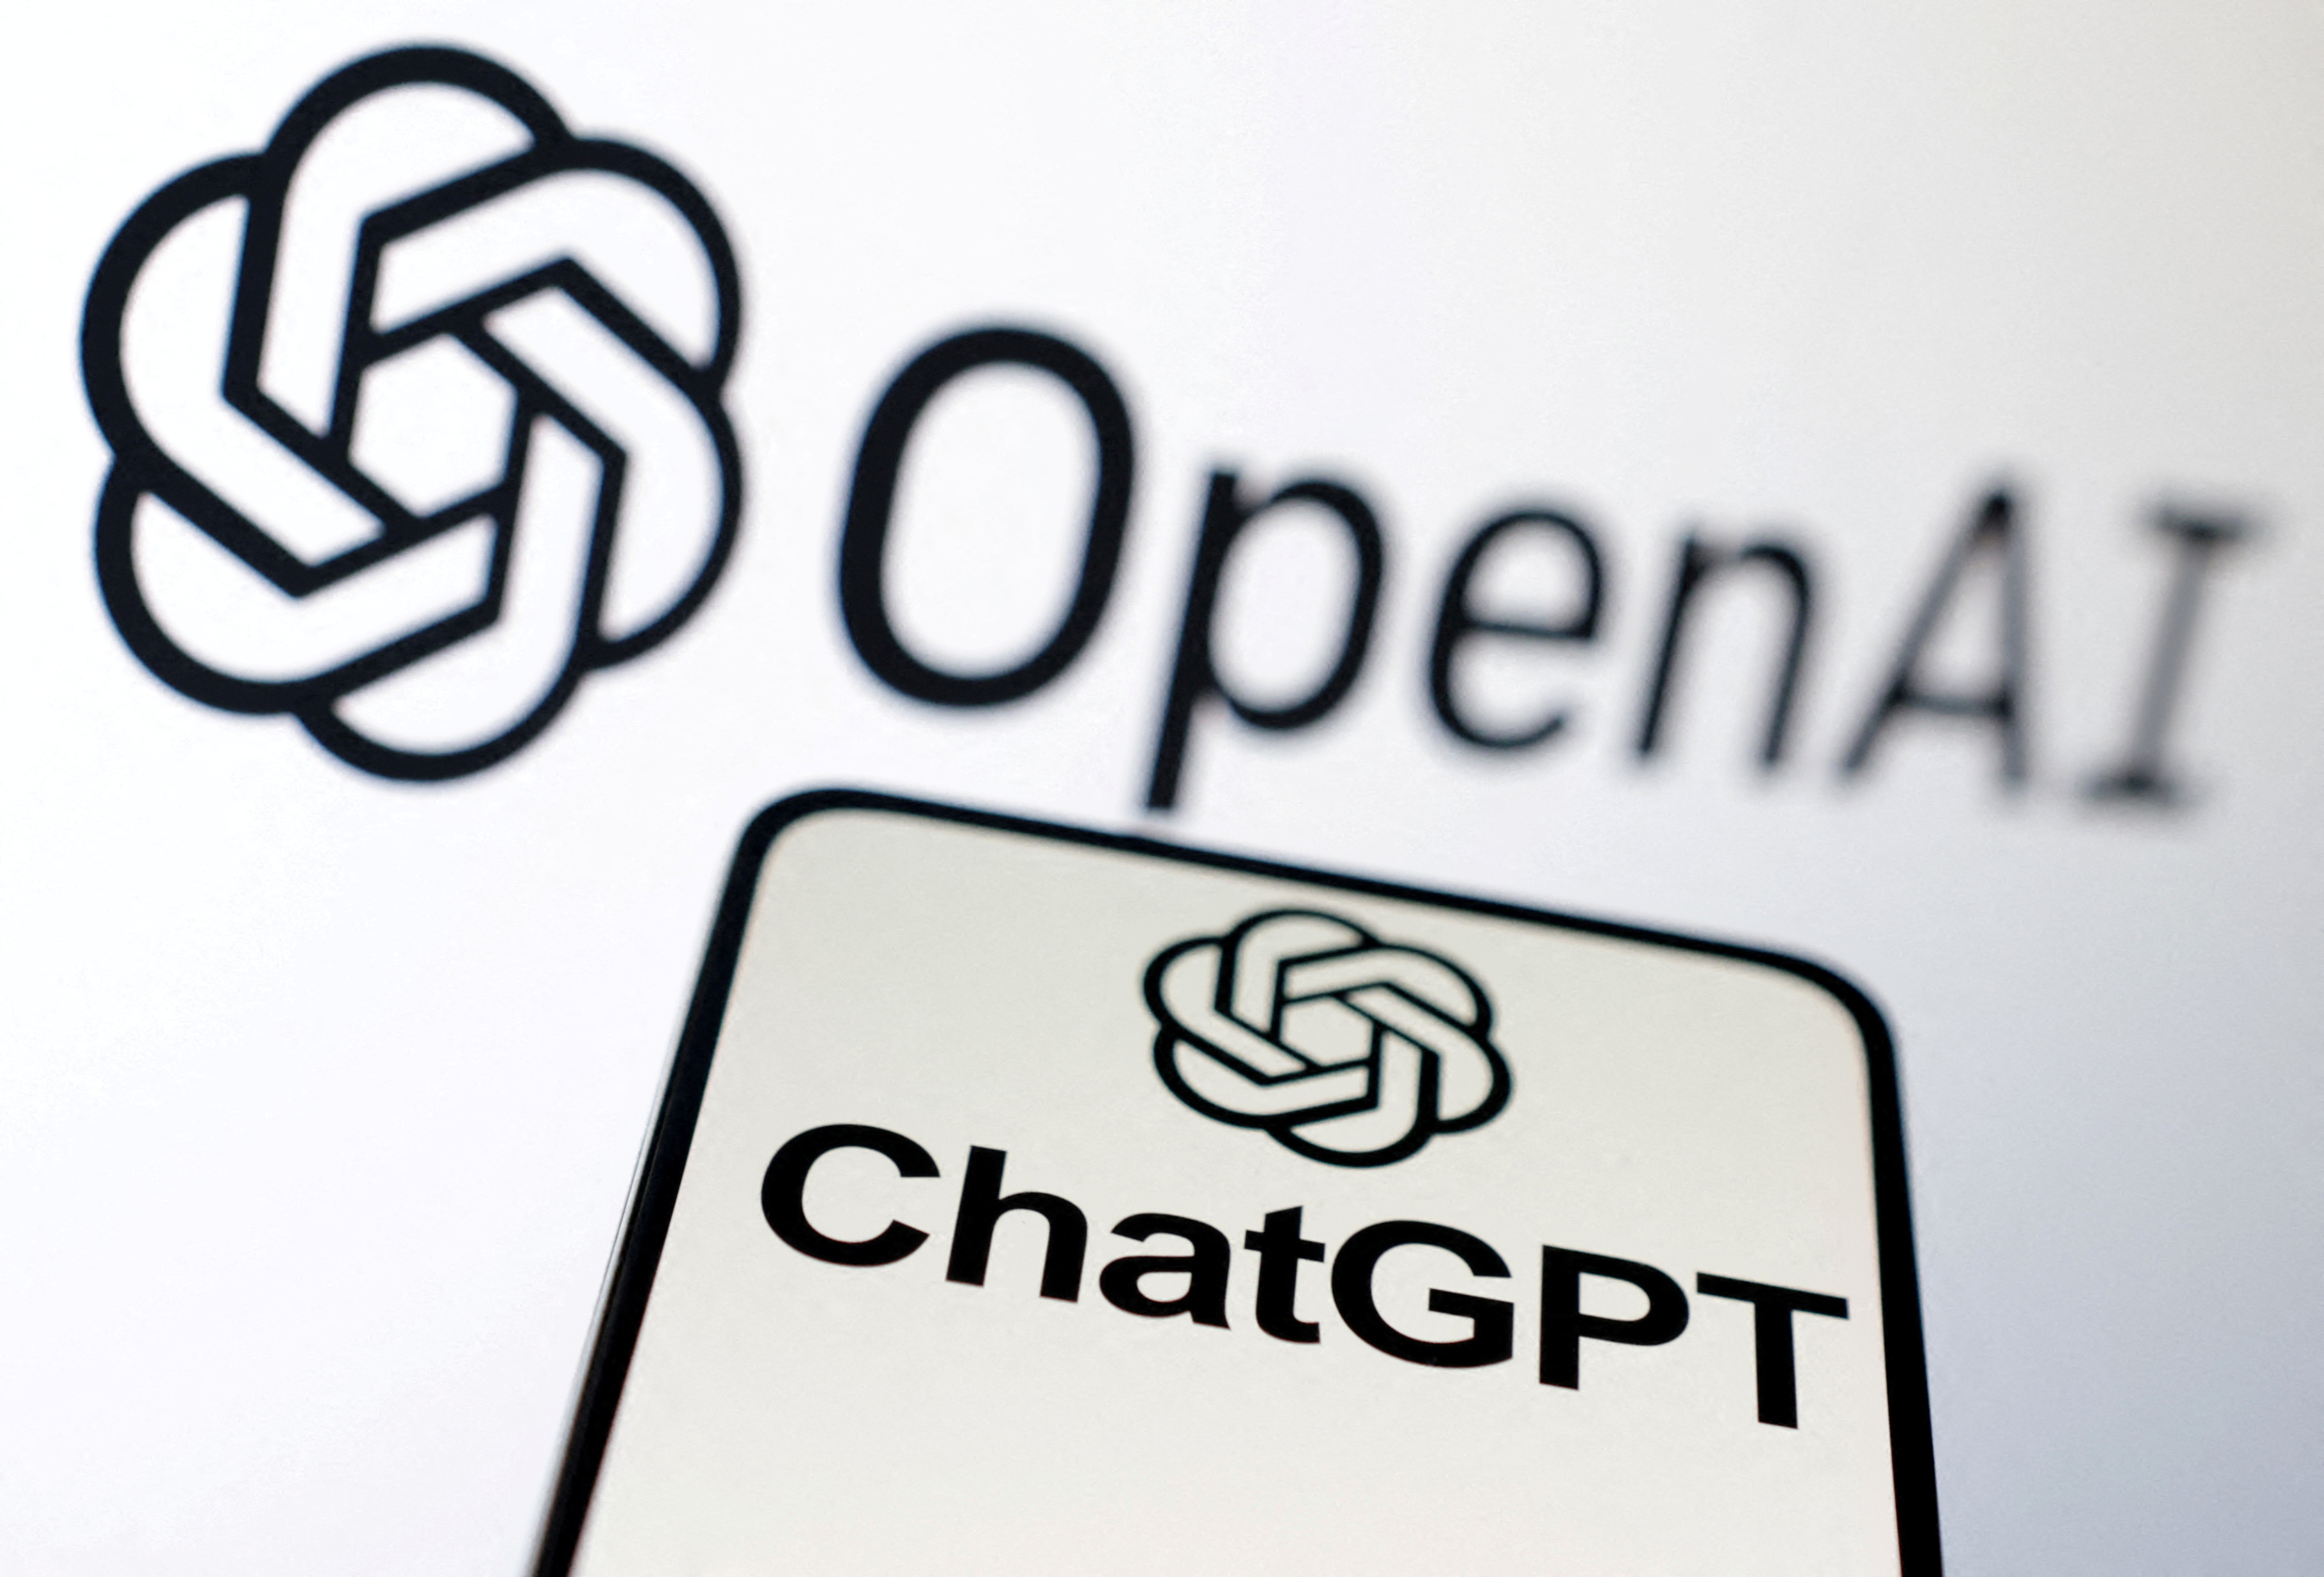 Denunciaron a ChatGPT en Estados Unidos: pidieron la suspensión del servicio porque es un riesgo para la privacidad de los usuarios